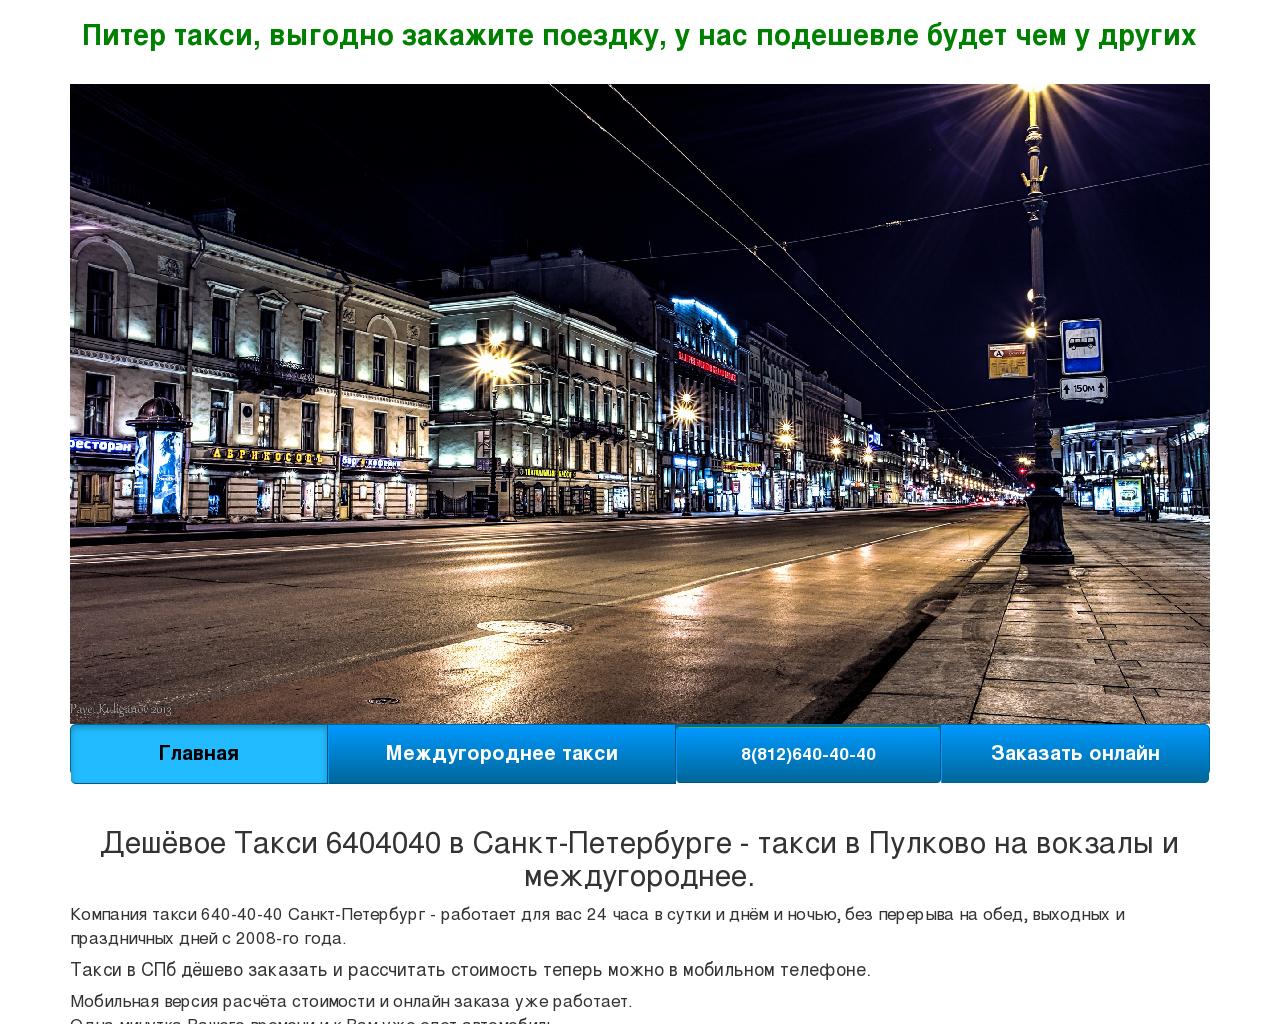 Изображение сайта 6404040.ru в разрешении 1280x1024